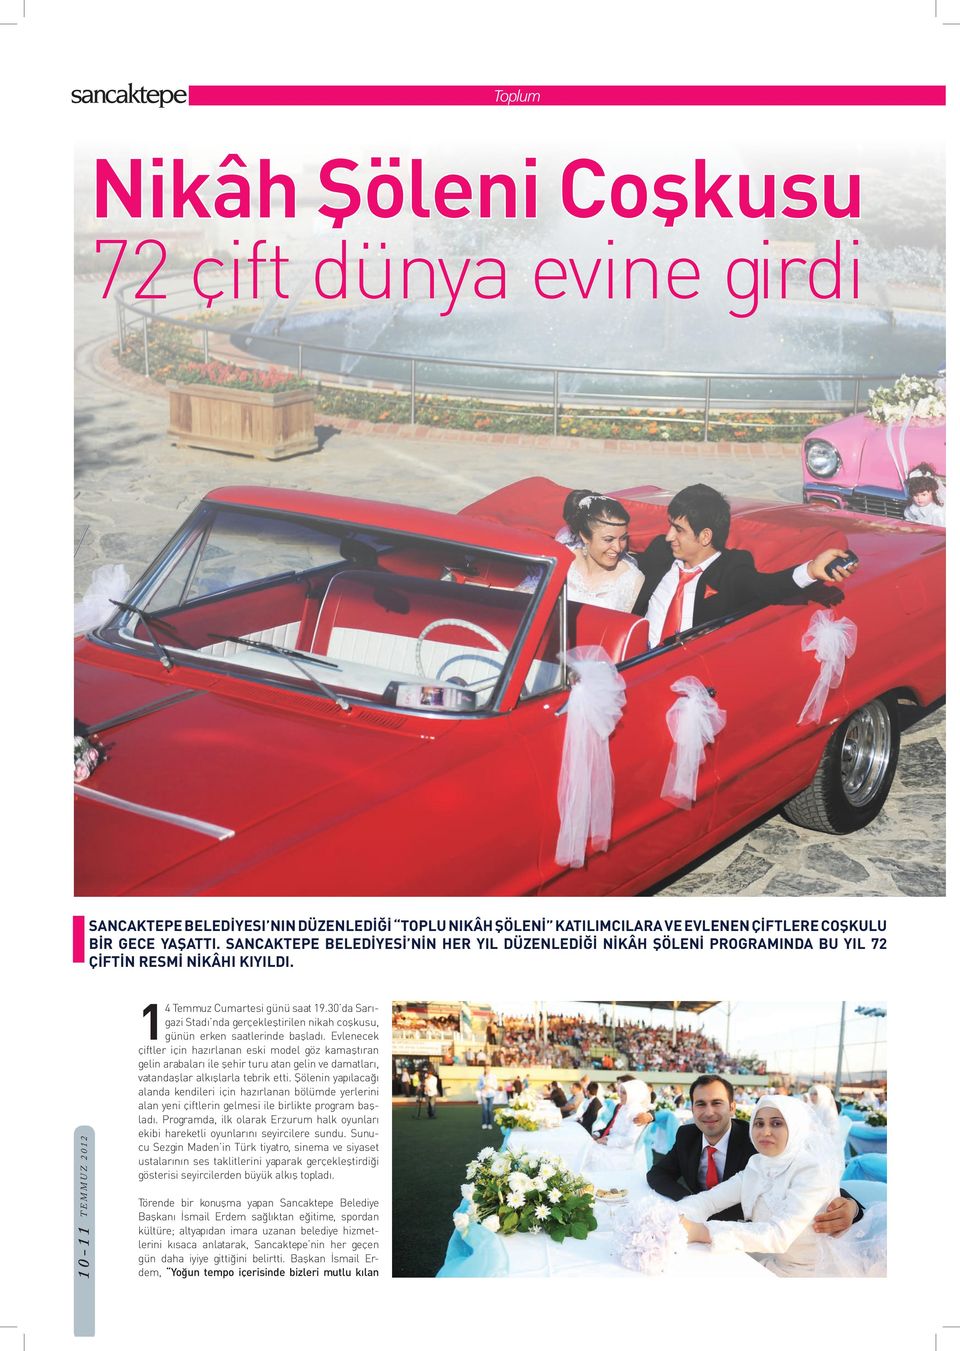 30 da Sarıgazi Stadı nda gerçekleştirilen nikah coşkusu, günün erken saatlerinde başladı.